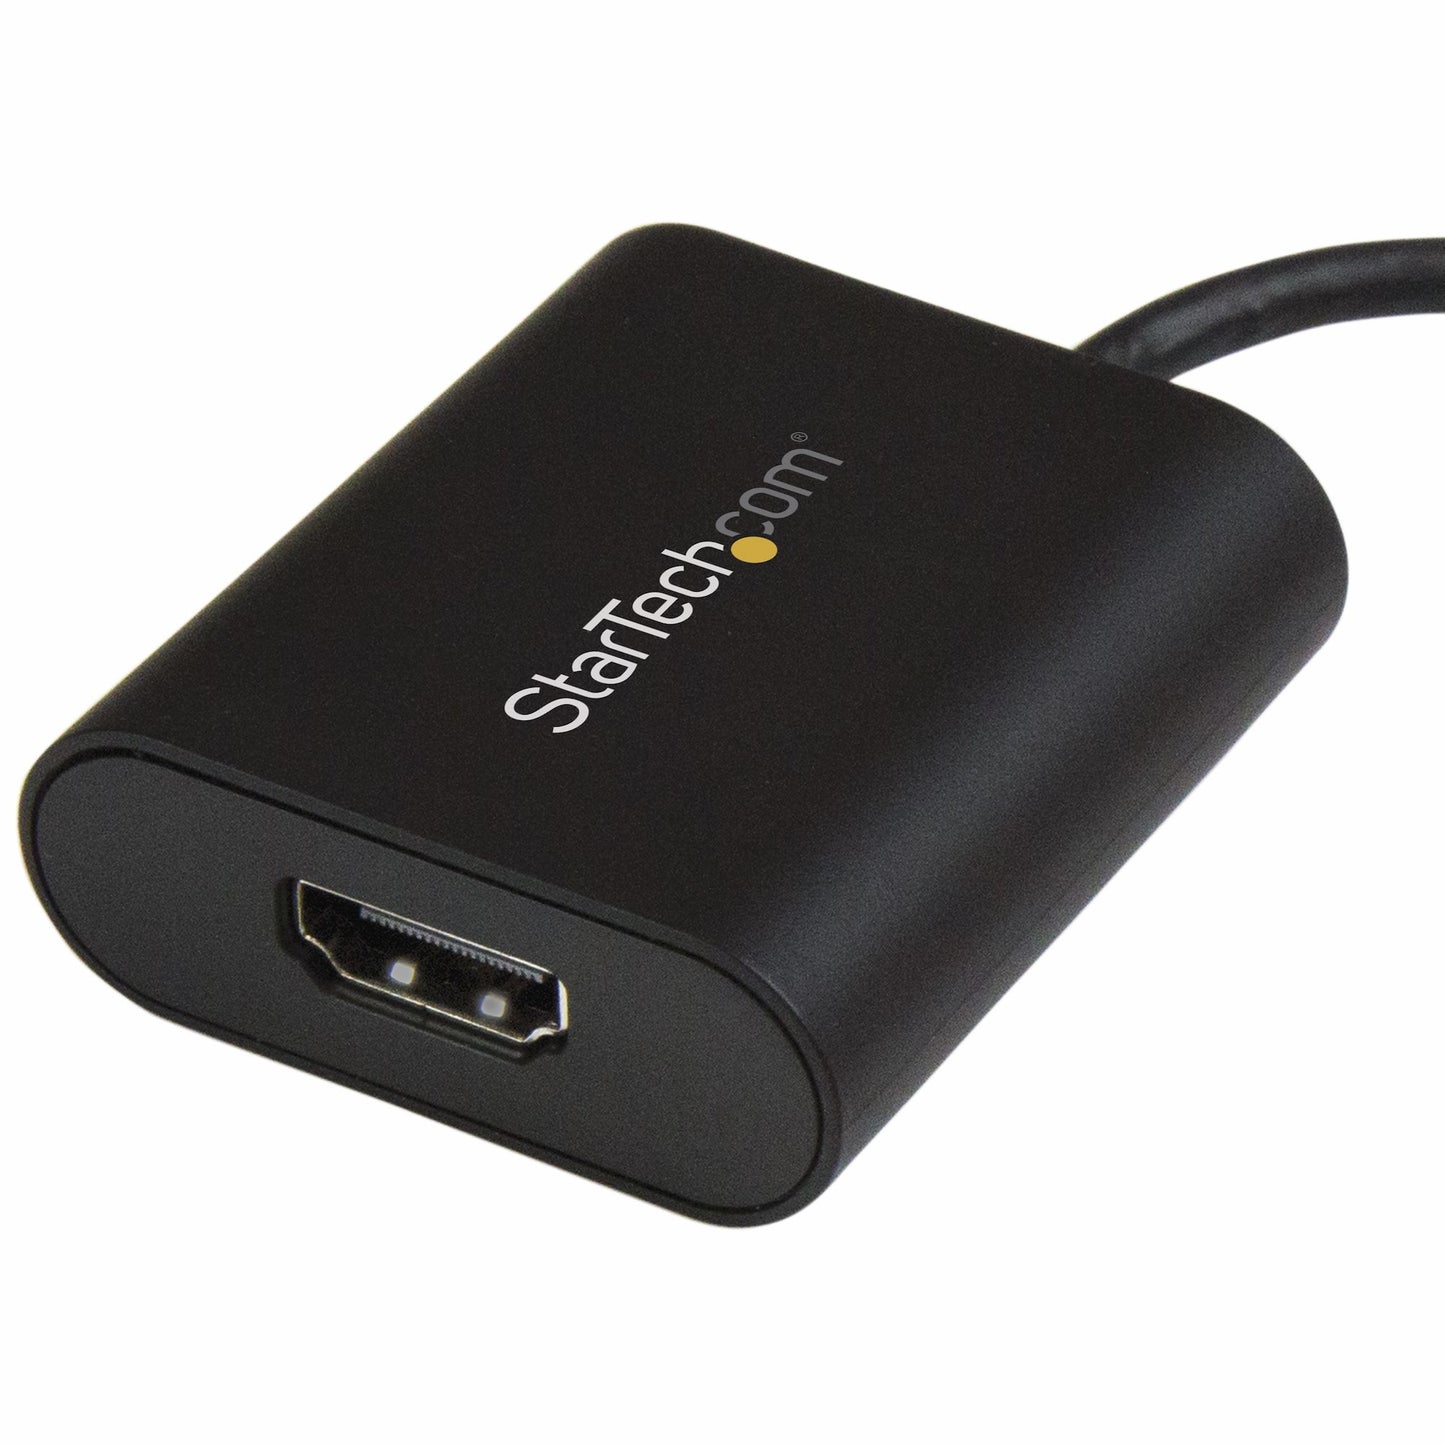 Adaptador de Video Externo USB-C a HDMI STARTECH - Convertidor USB Tipo C a HDMI 4K 60Hz con Interruptor de Modo de Presentación, color negro